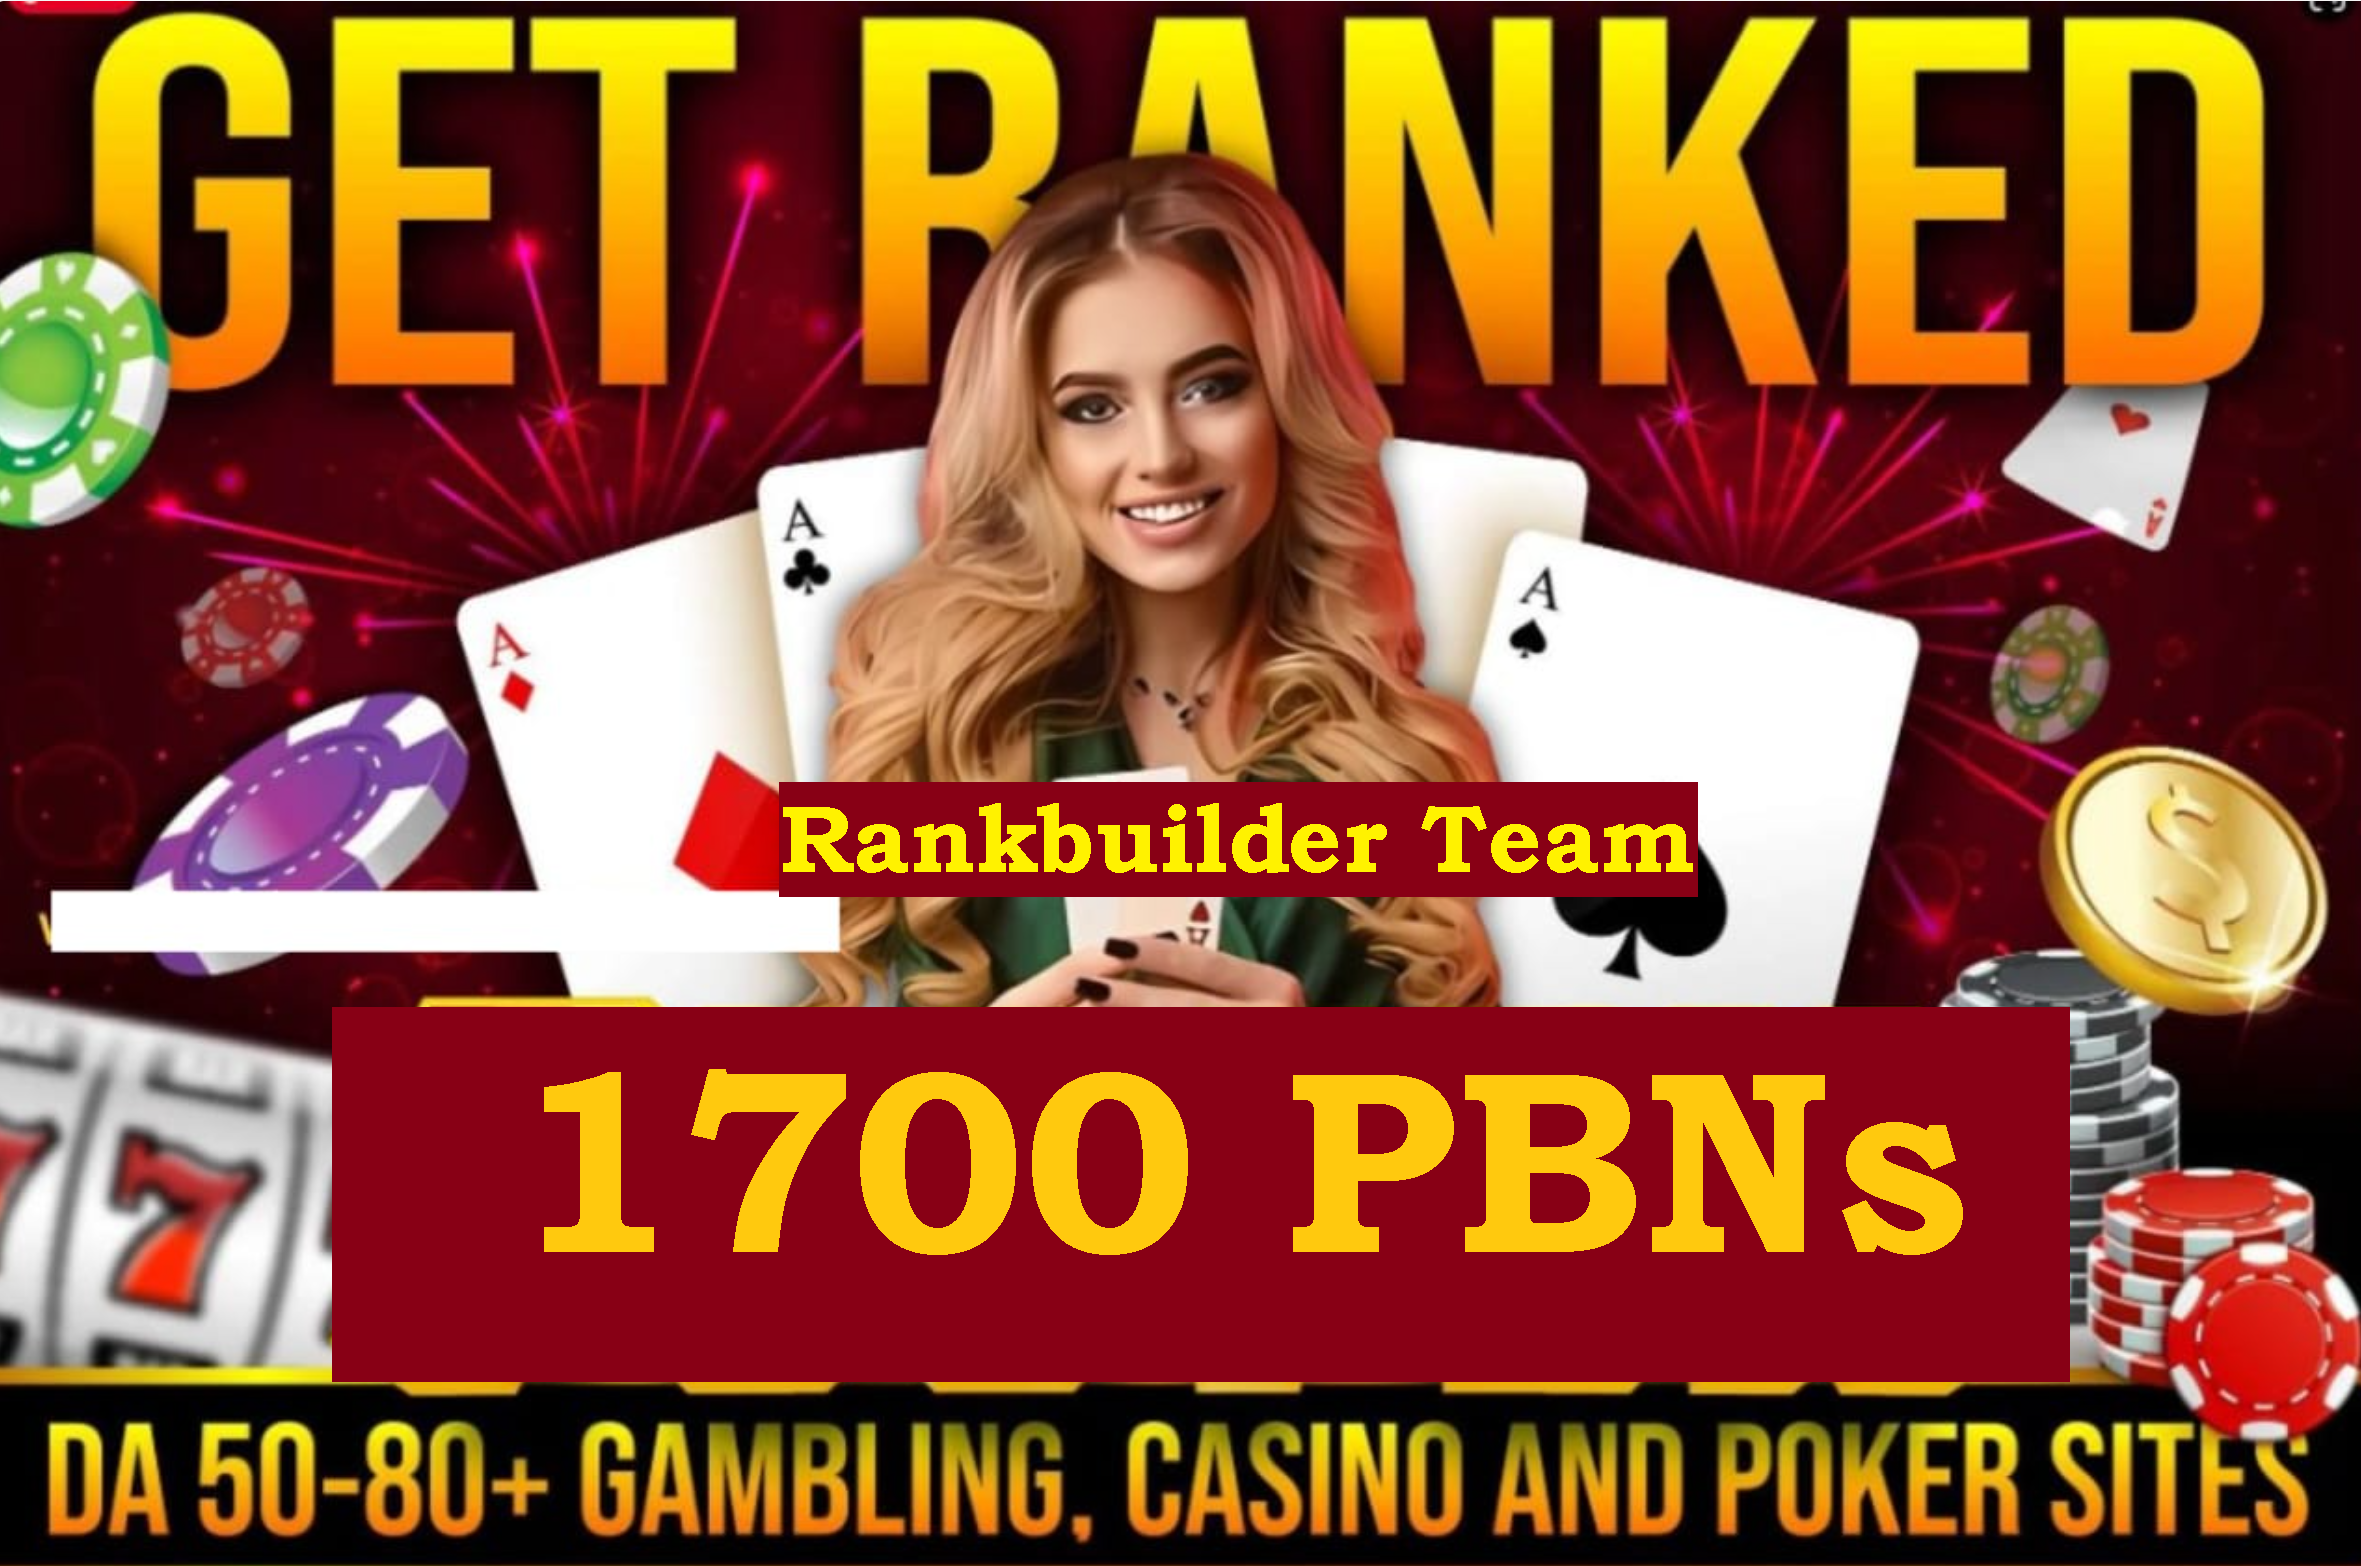 2000+ PBN DA DR 80 TO 50+ Gambling CASINO Poker Betting UFABet Top Rankings PACKAGE